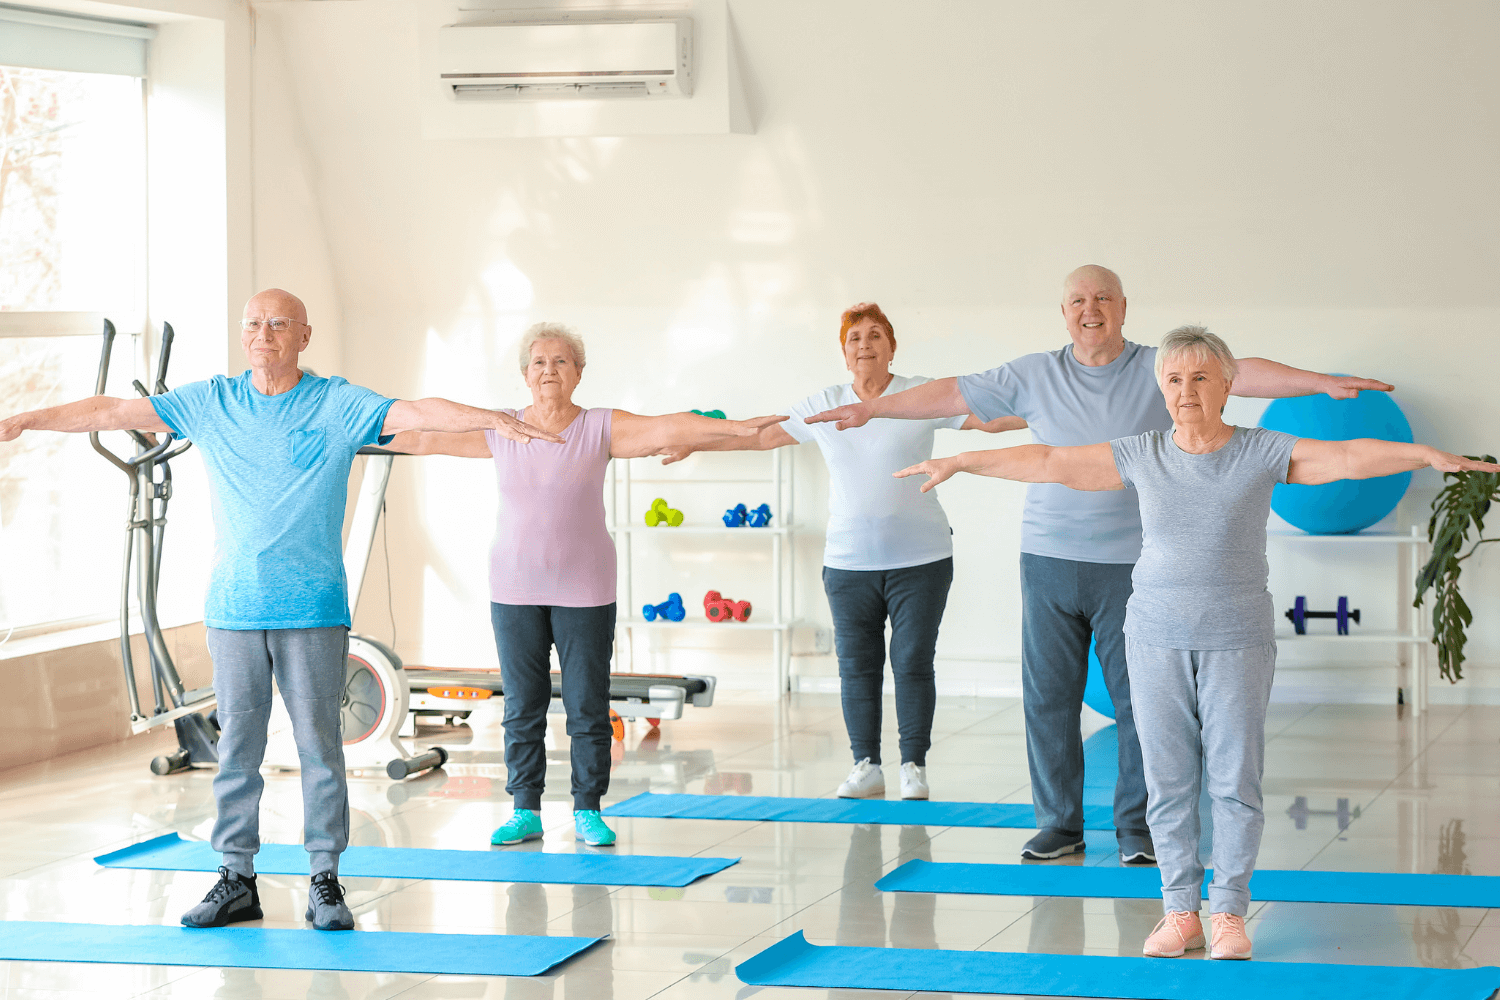 Centre de sport et santé aux Ulis - Senior sport et activités physiques adaptées - lien social et renforcement musculaire